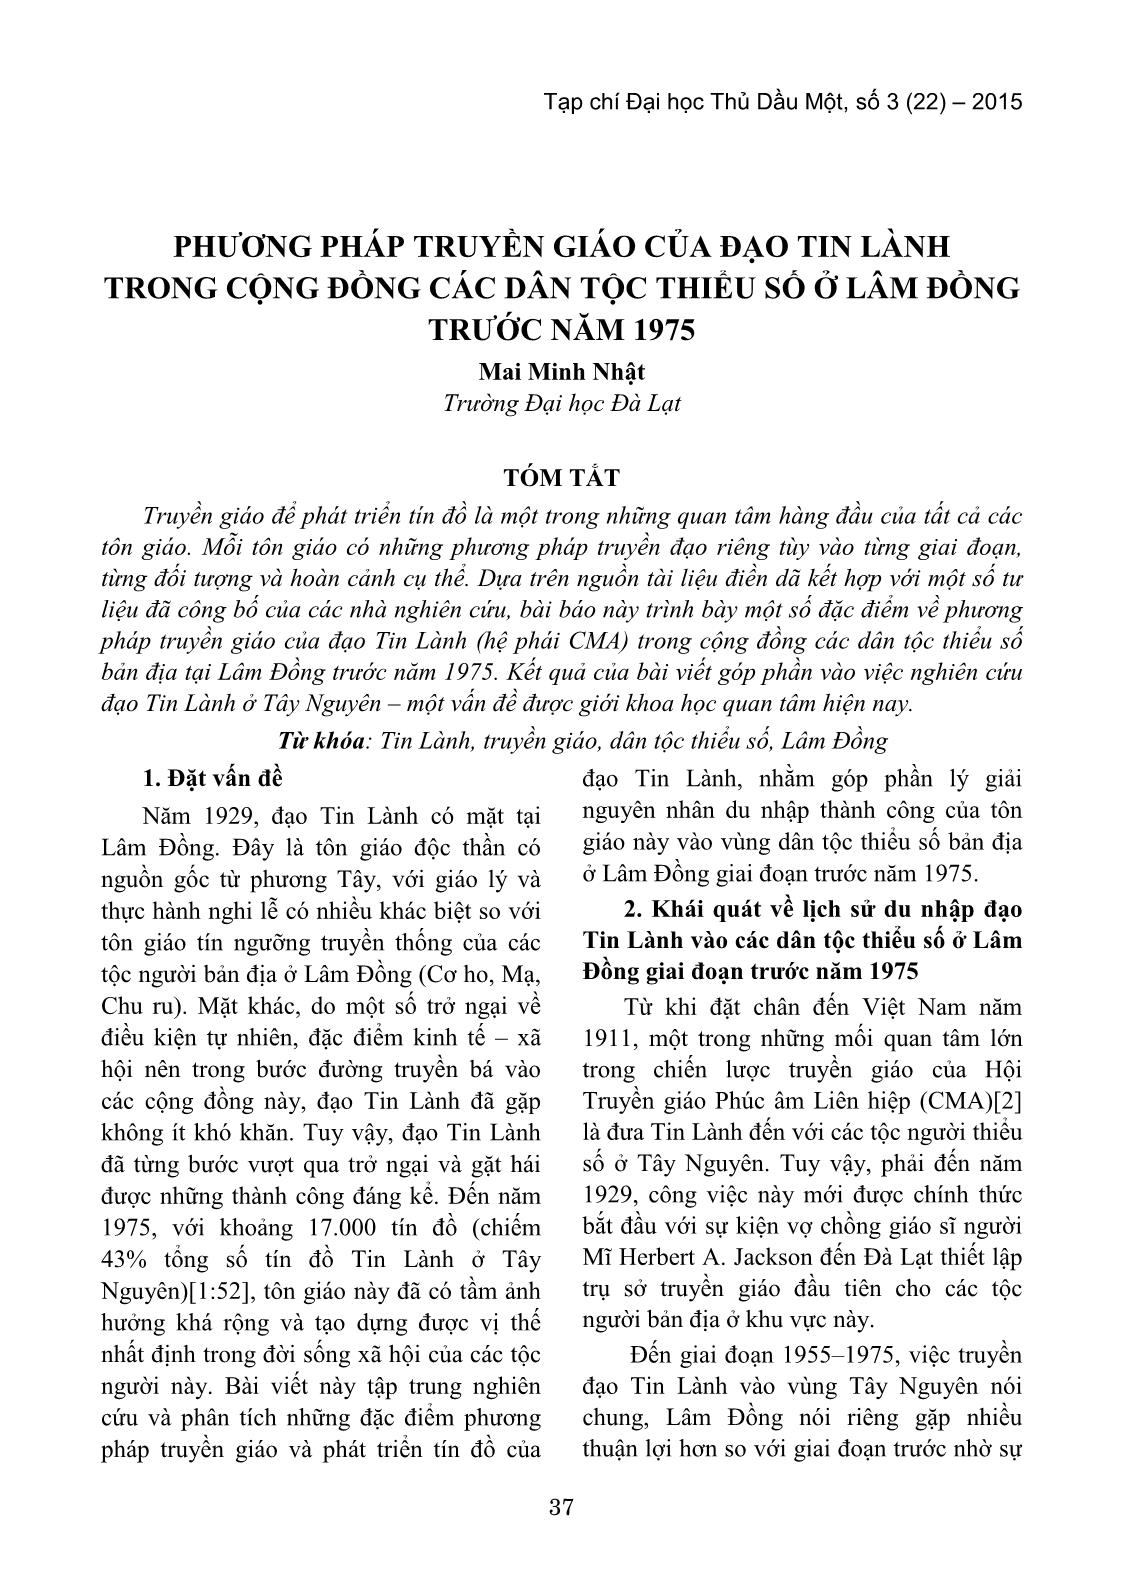 Phương pháp truyền giáo của đạo tin lành trong cộng đồng các dân tộc thiểu số ở Lâm Đồng trước năm 1975 trang 1